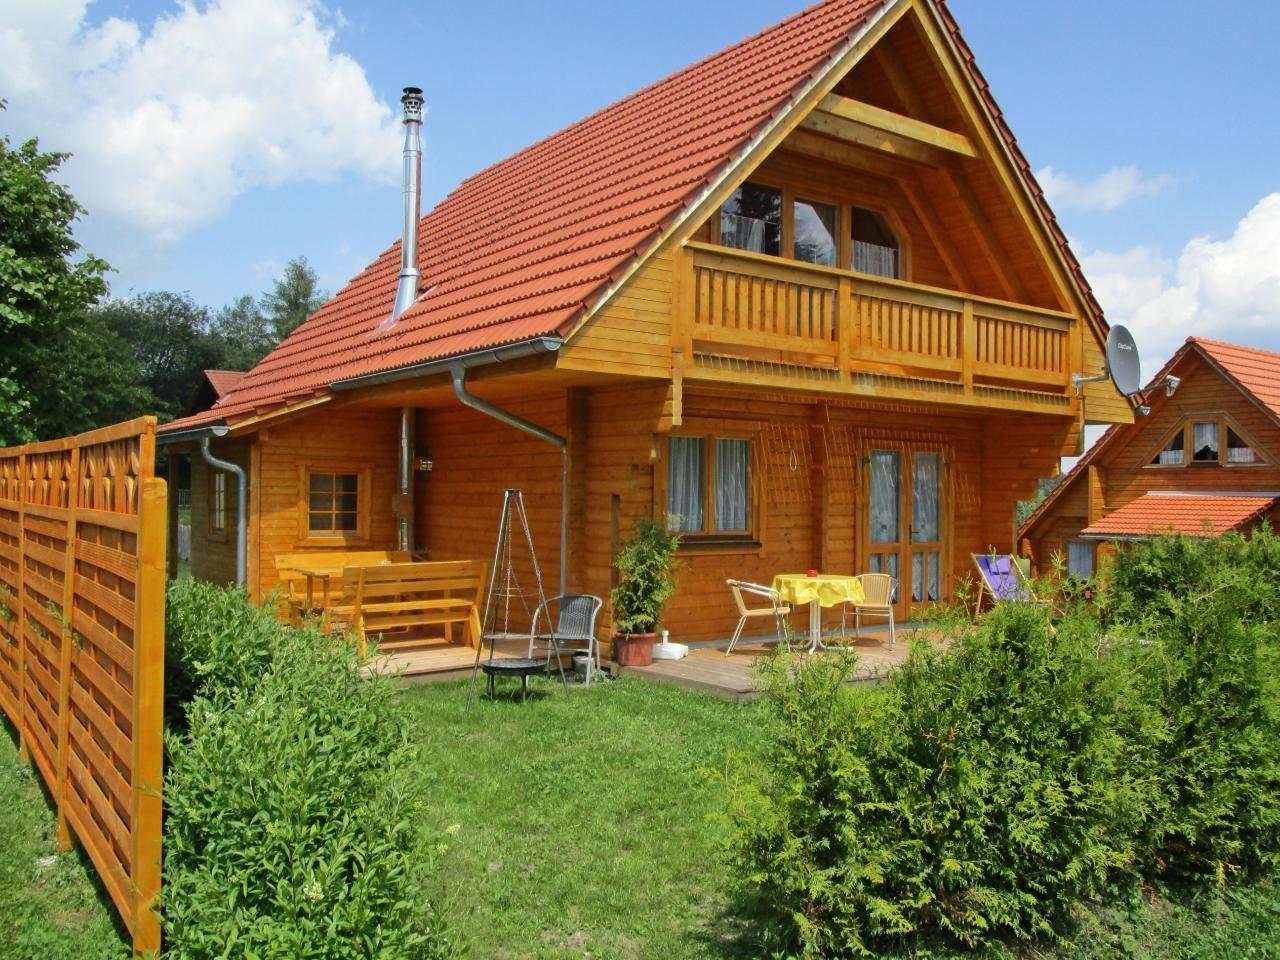 Ferienhaus in Philippsreut mit Kleiner Terrasse  in Deutschland